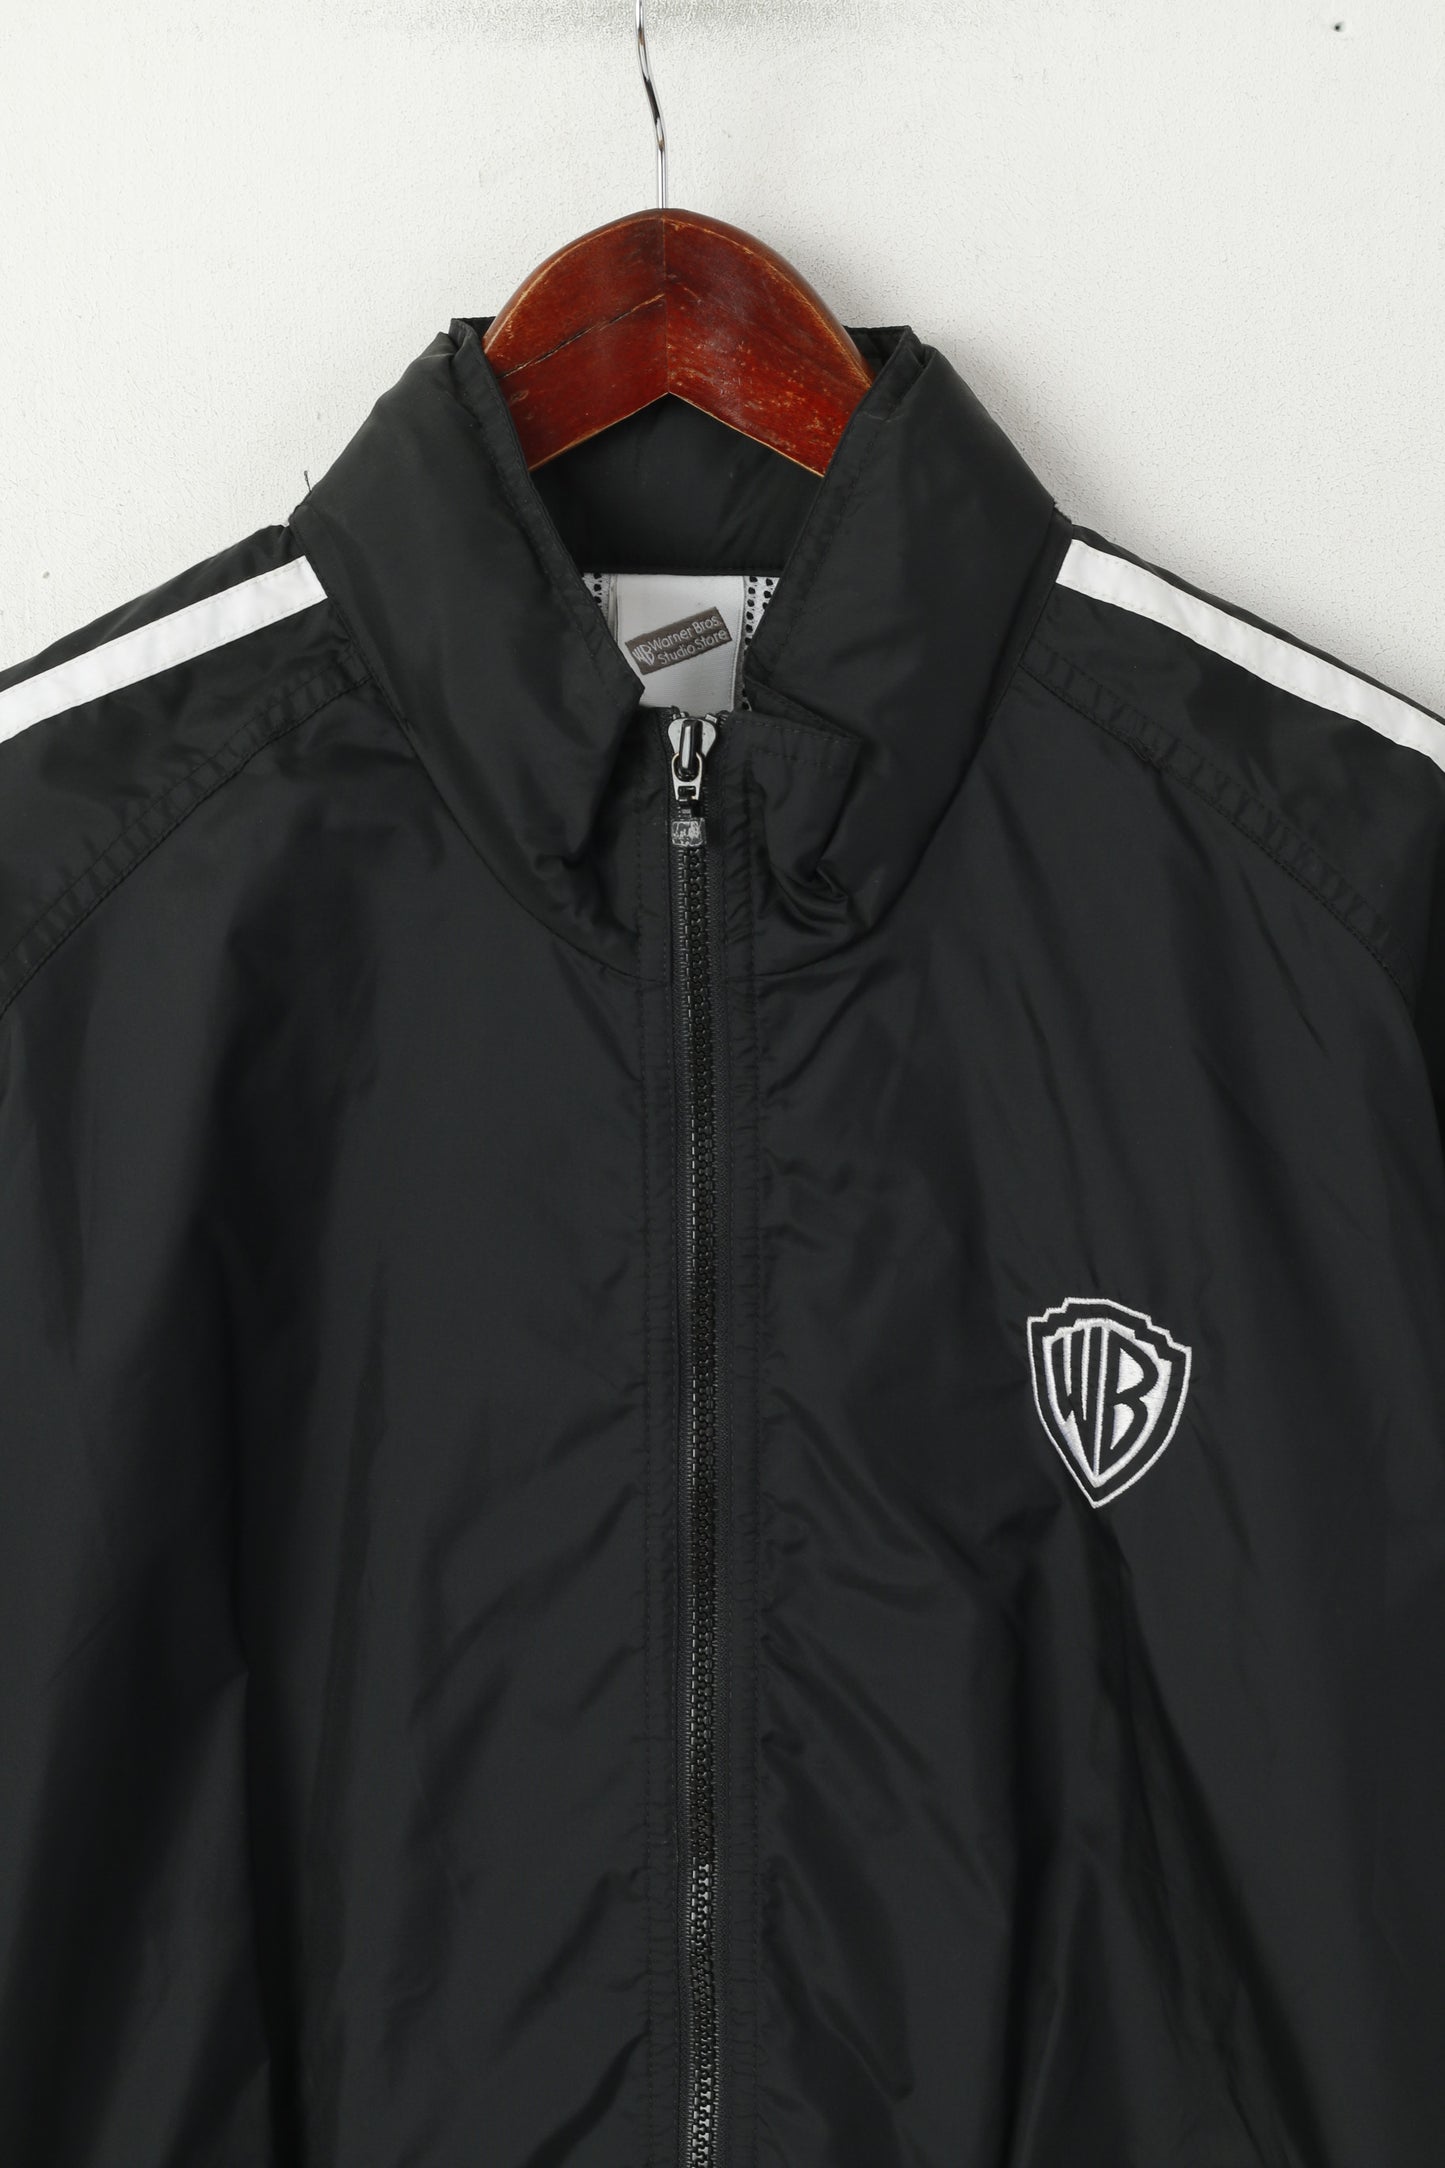 Warner Bros Studio Store Men S Jacket Black Lightweight Zip Up Hidden Hood Top